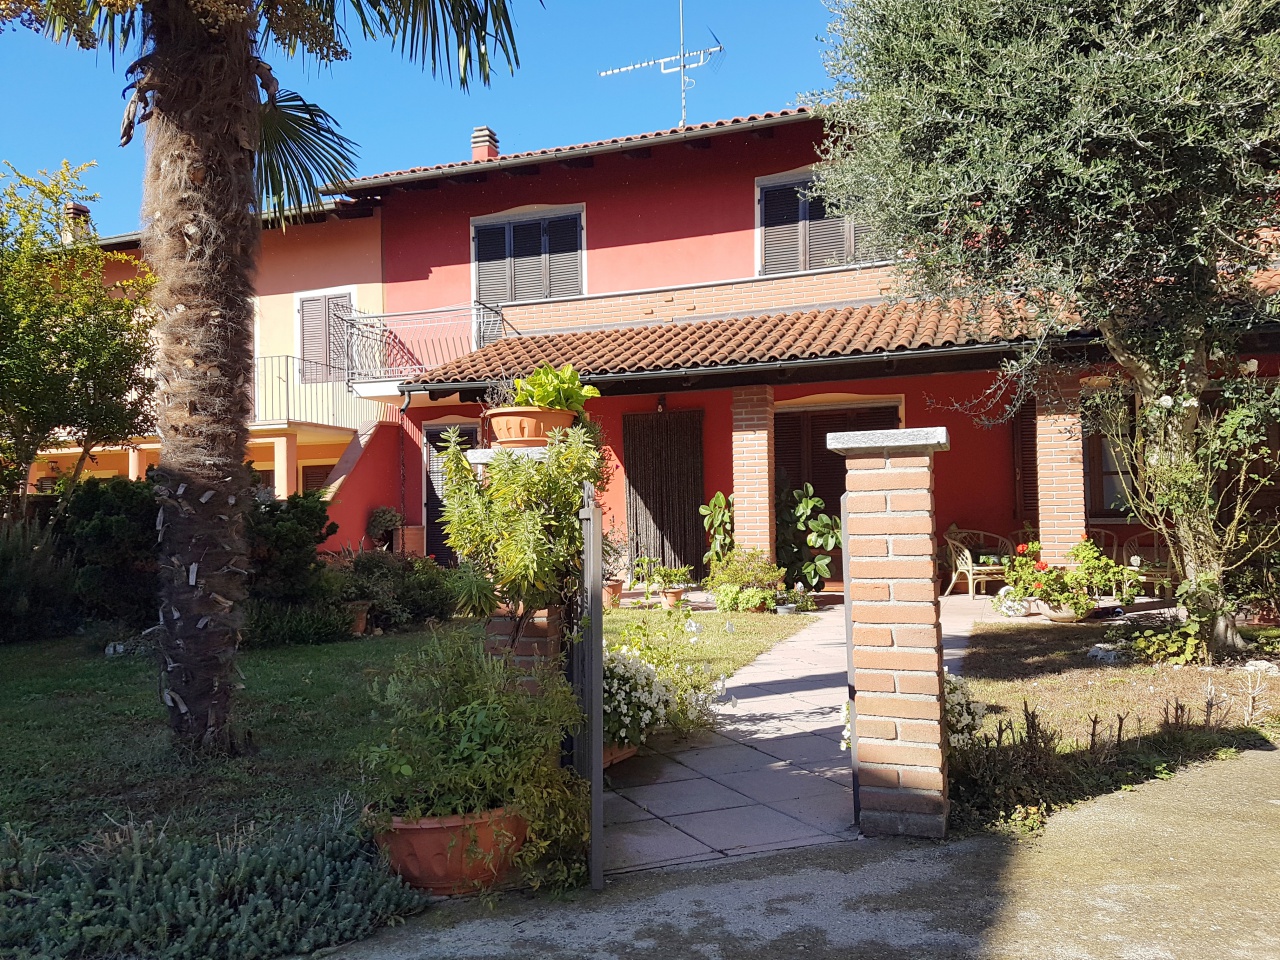 Casa indipendente con giardino in via piai, Brozolo